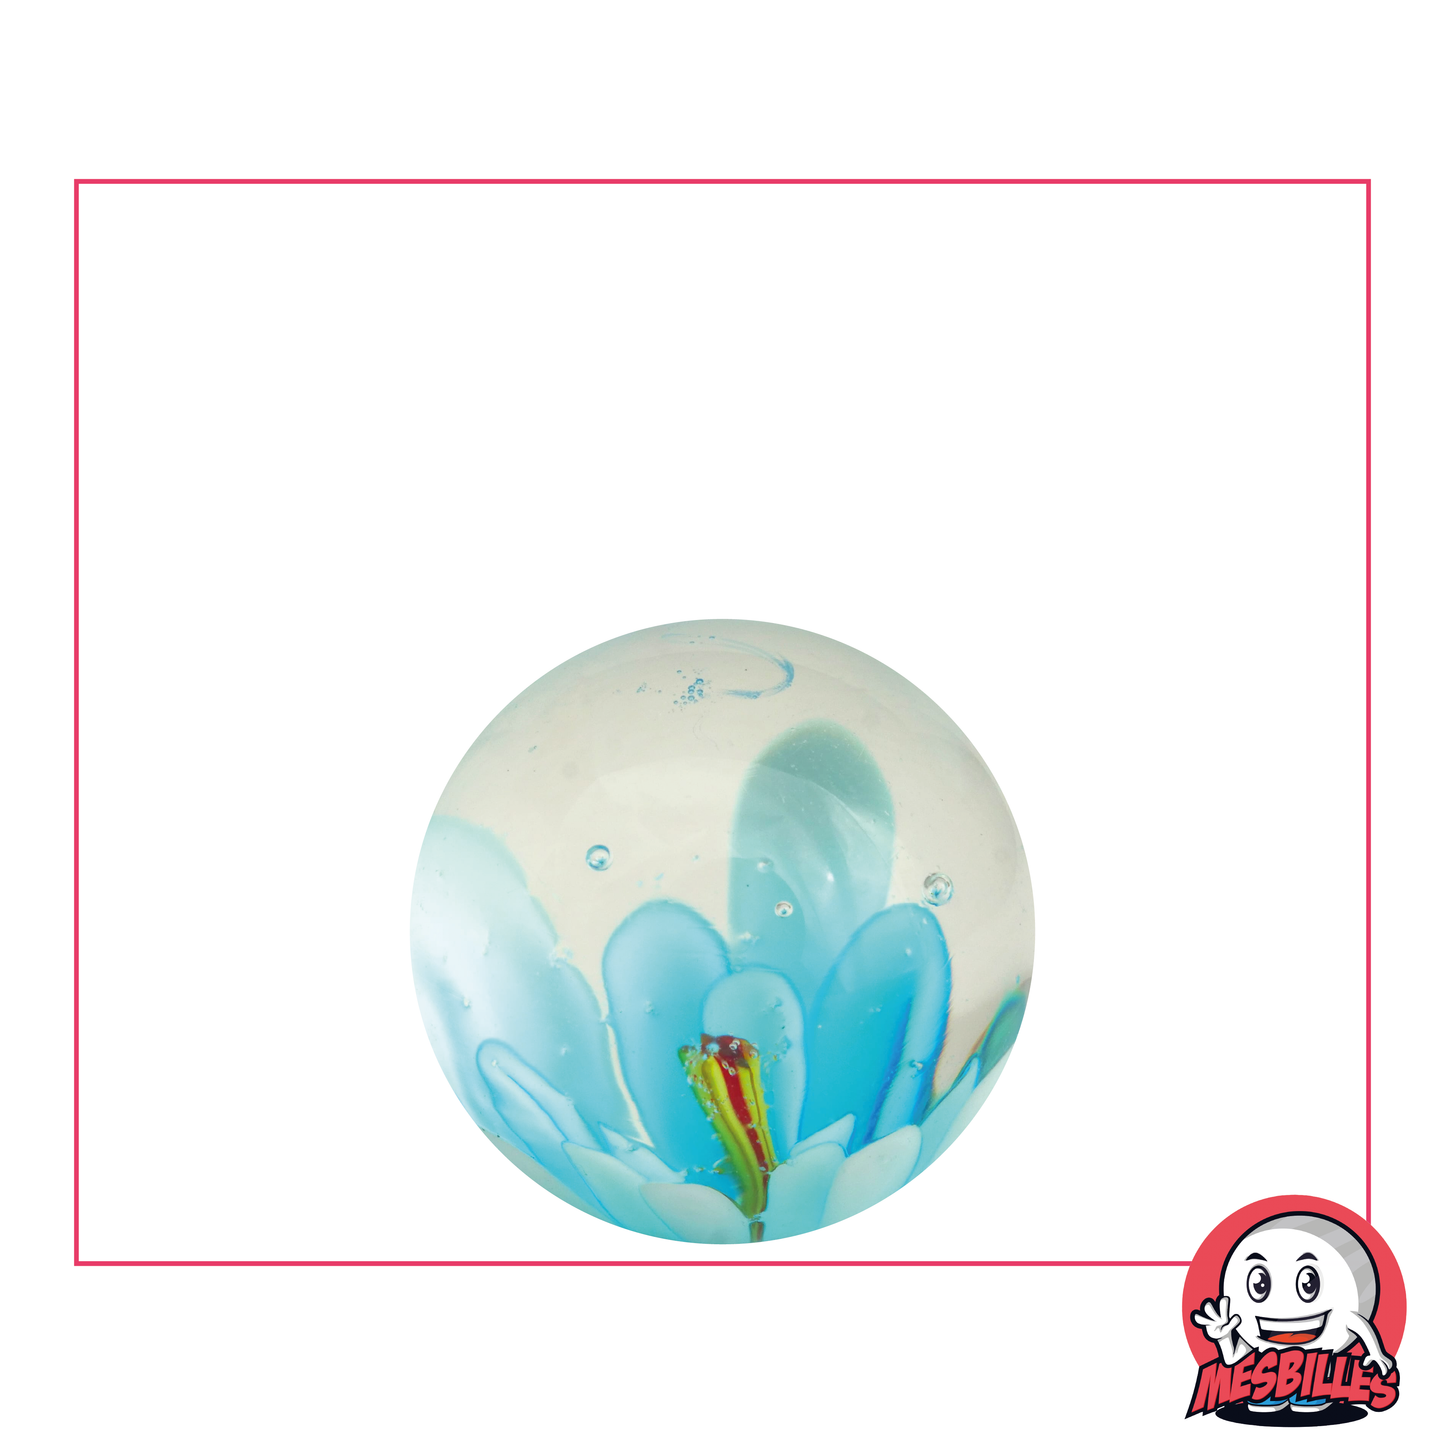 Bille Art Fleur, en verre translucide et fleur turquoise en 3D incrustée au centre - MesBilles